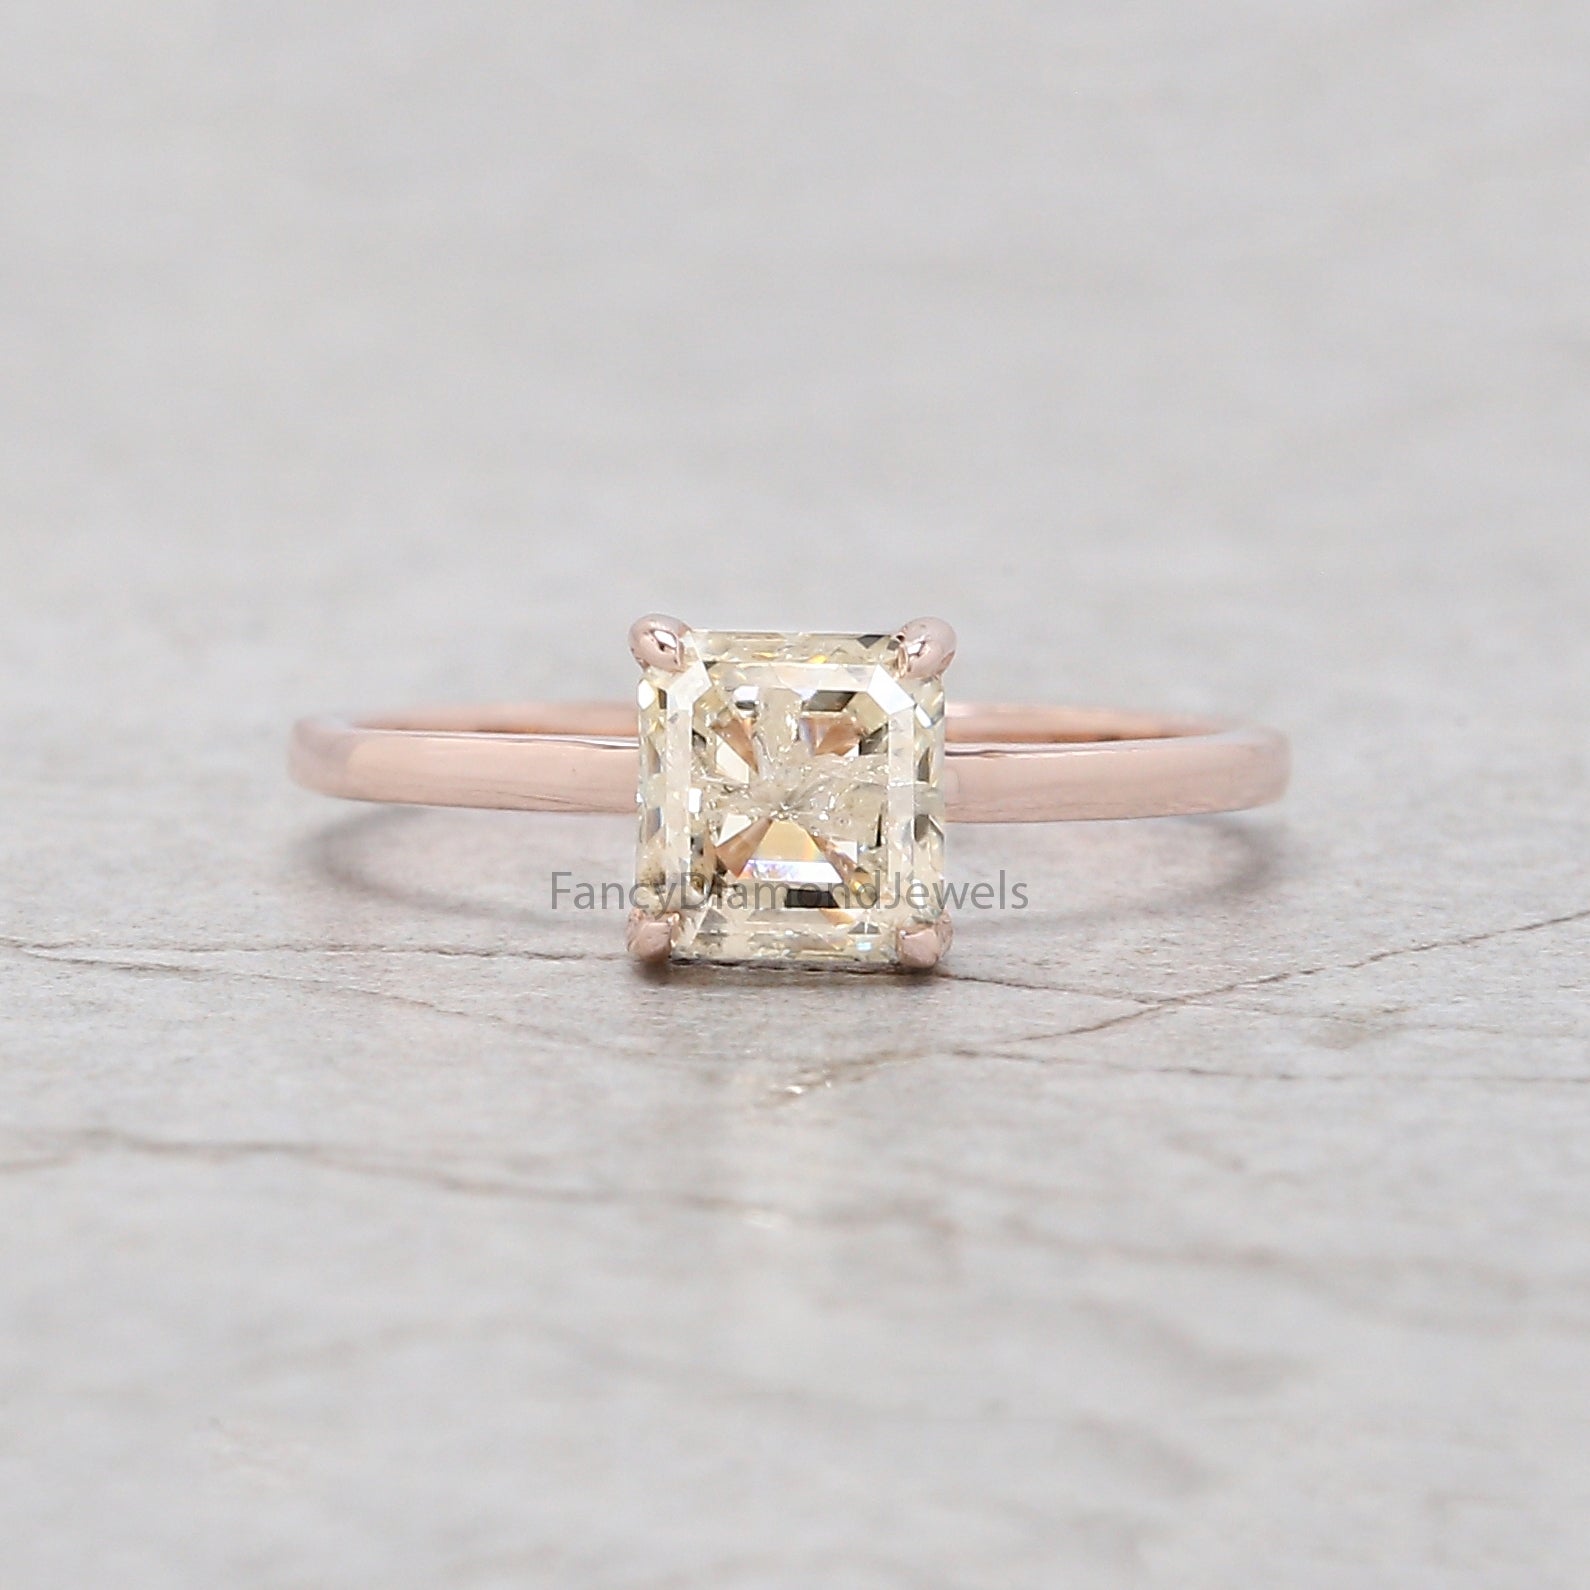 Bezel Set Halo Engagement Ring With Radiant Square Cut Diamond - GOODSTONE